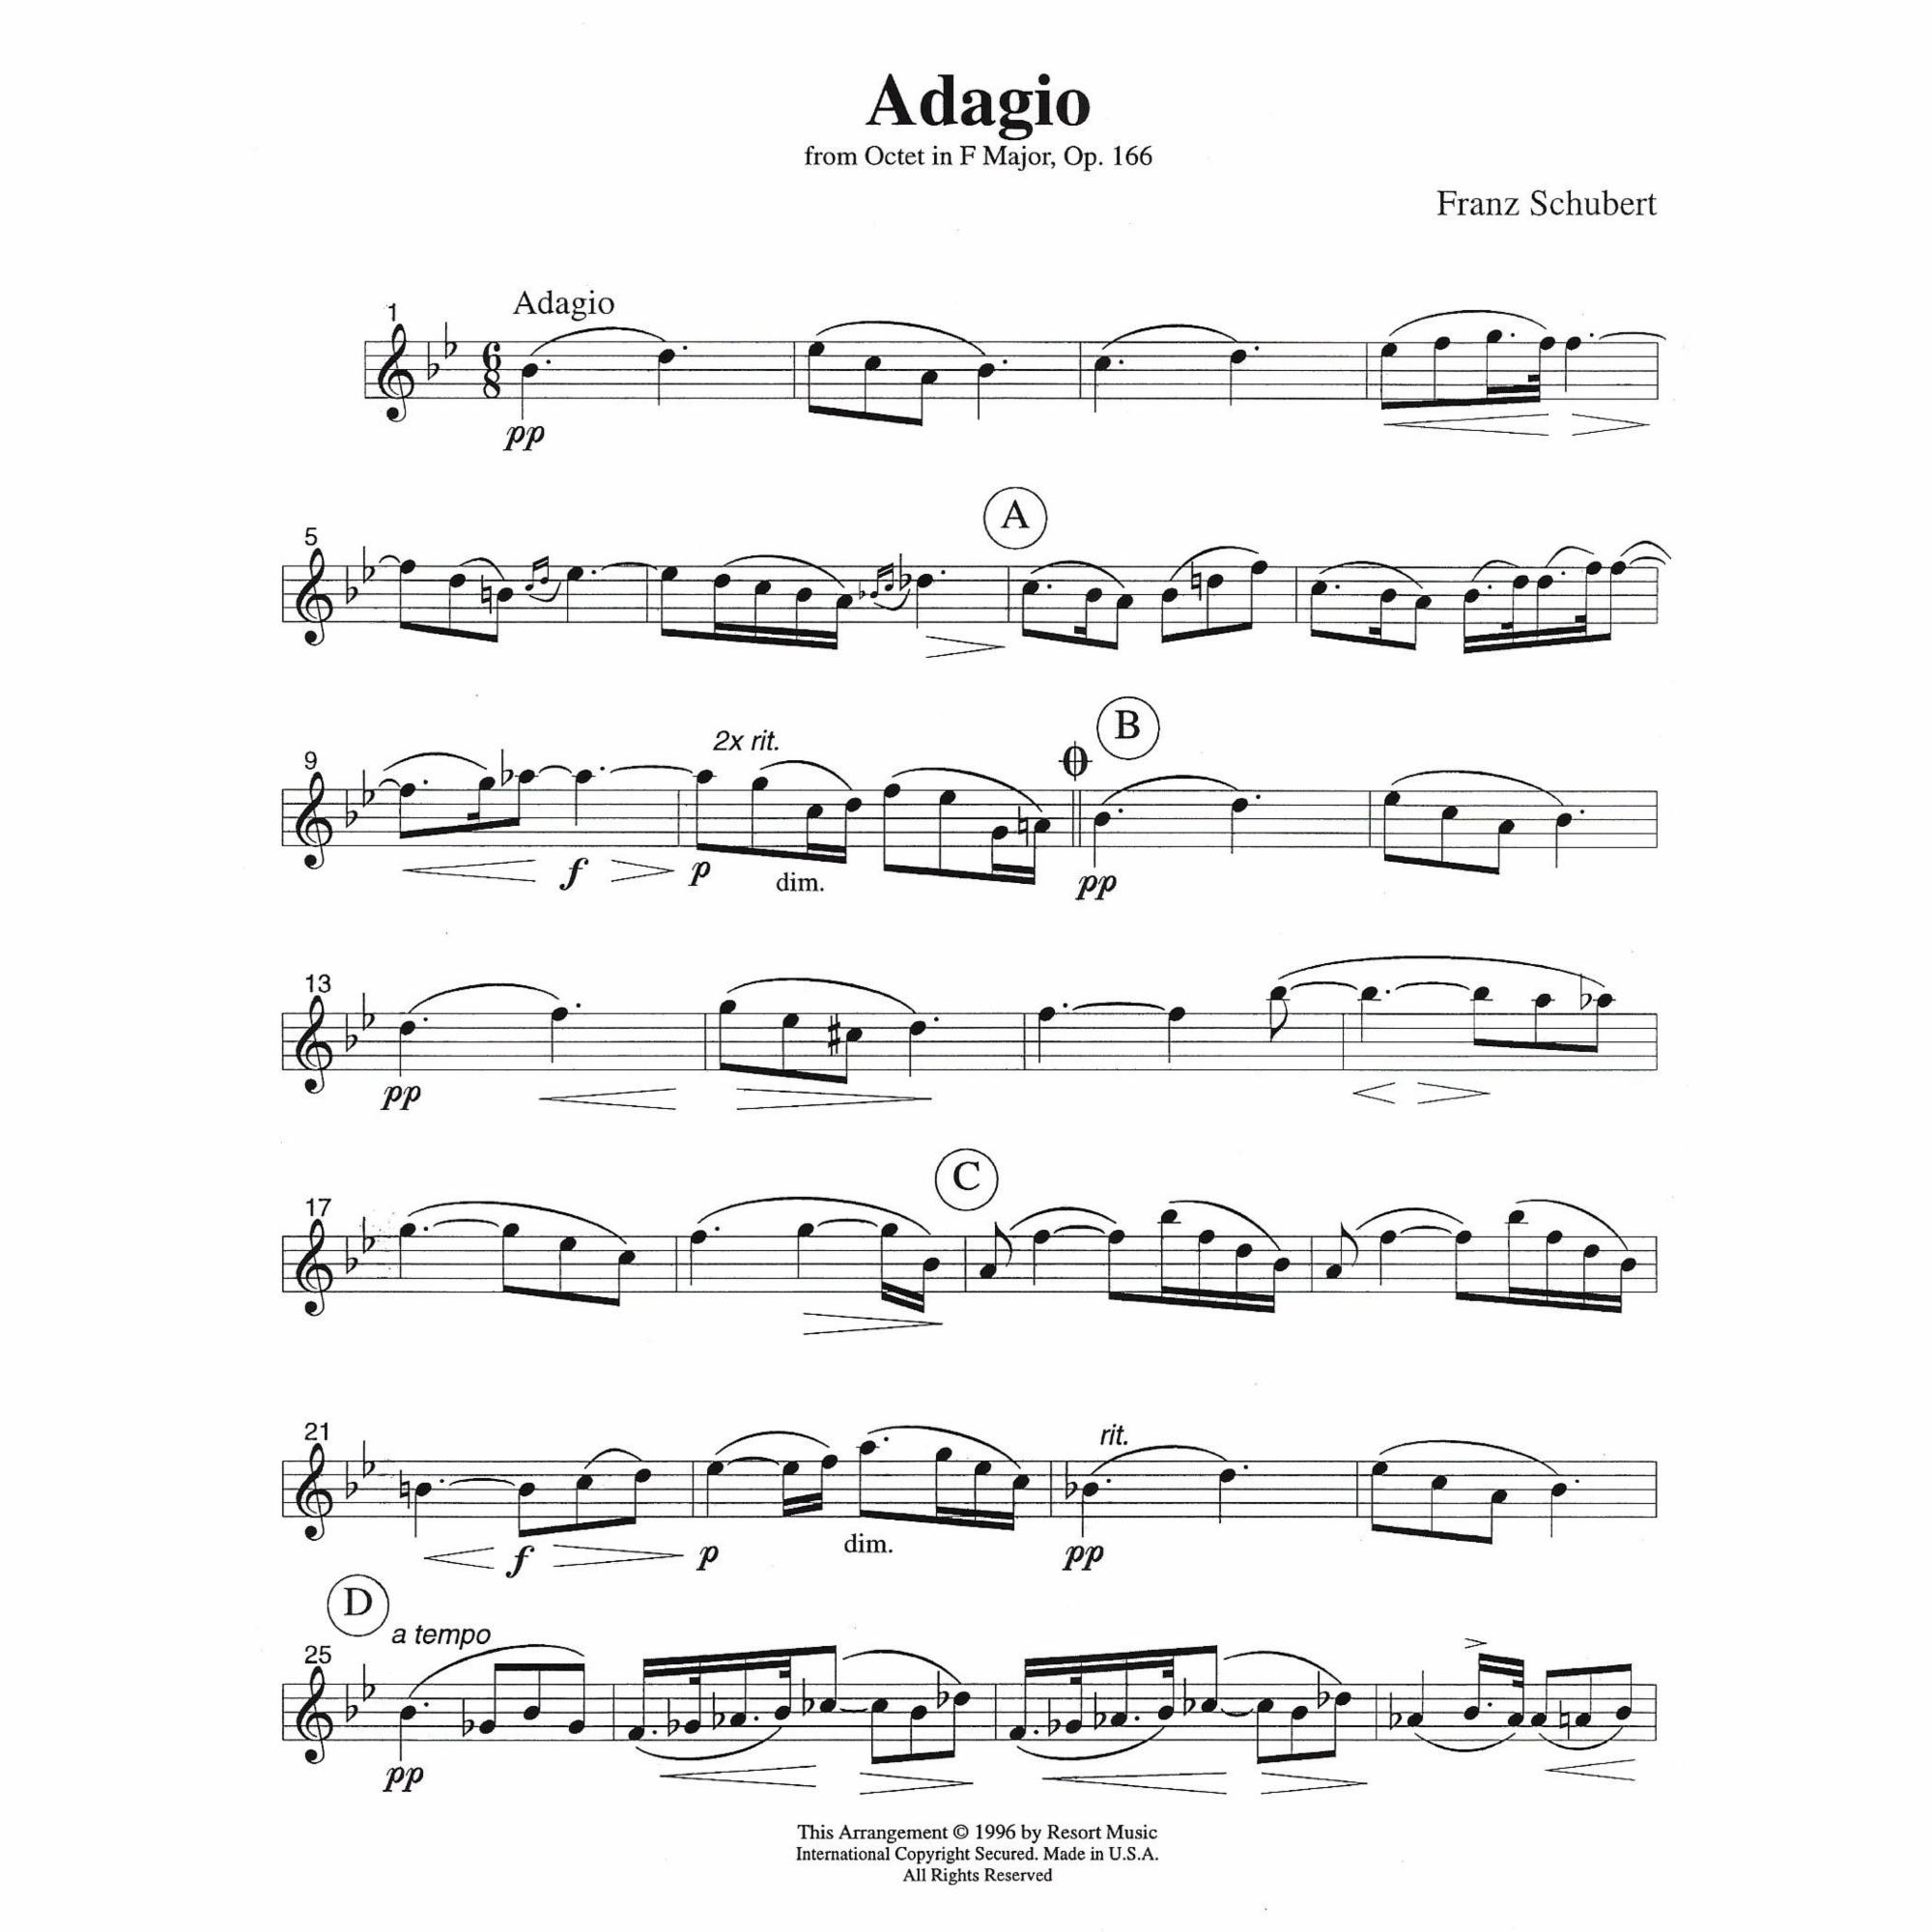 Sample: Part 1: Violin